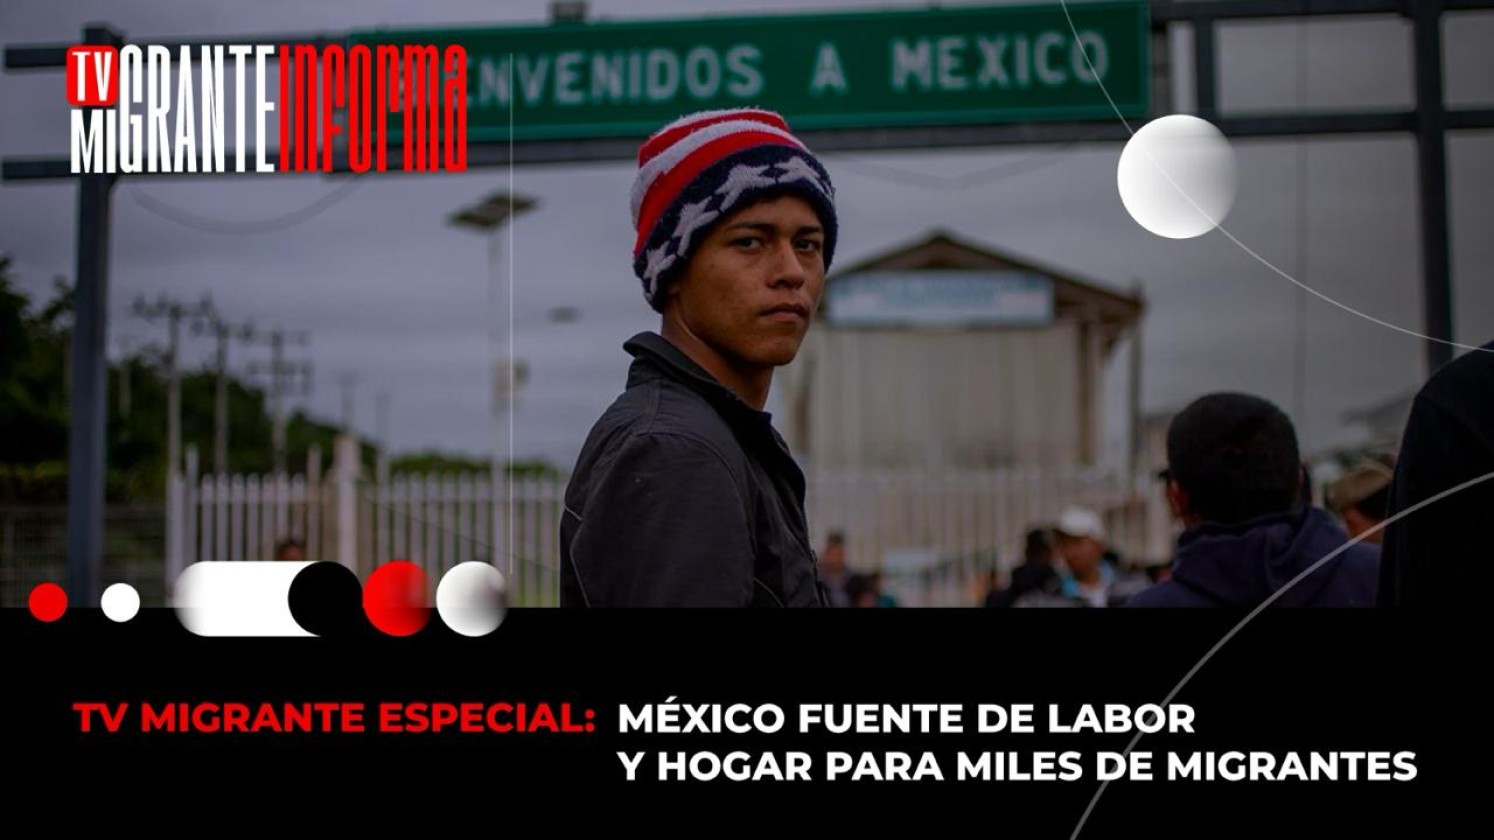 México fuente de labor y hogar para miles de migrantes